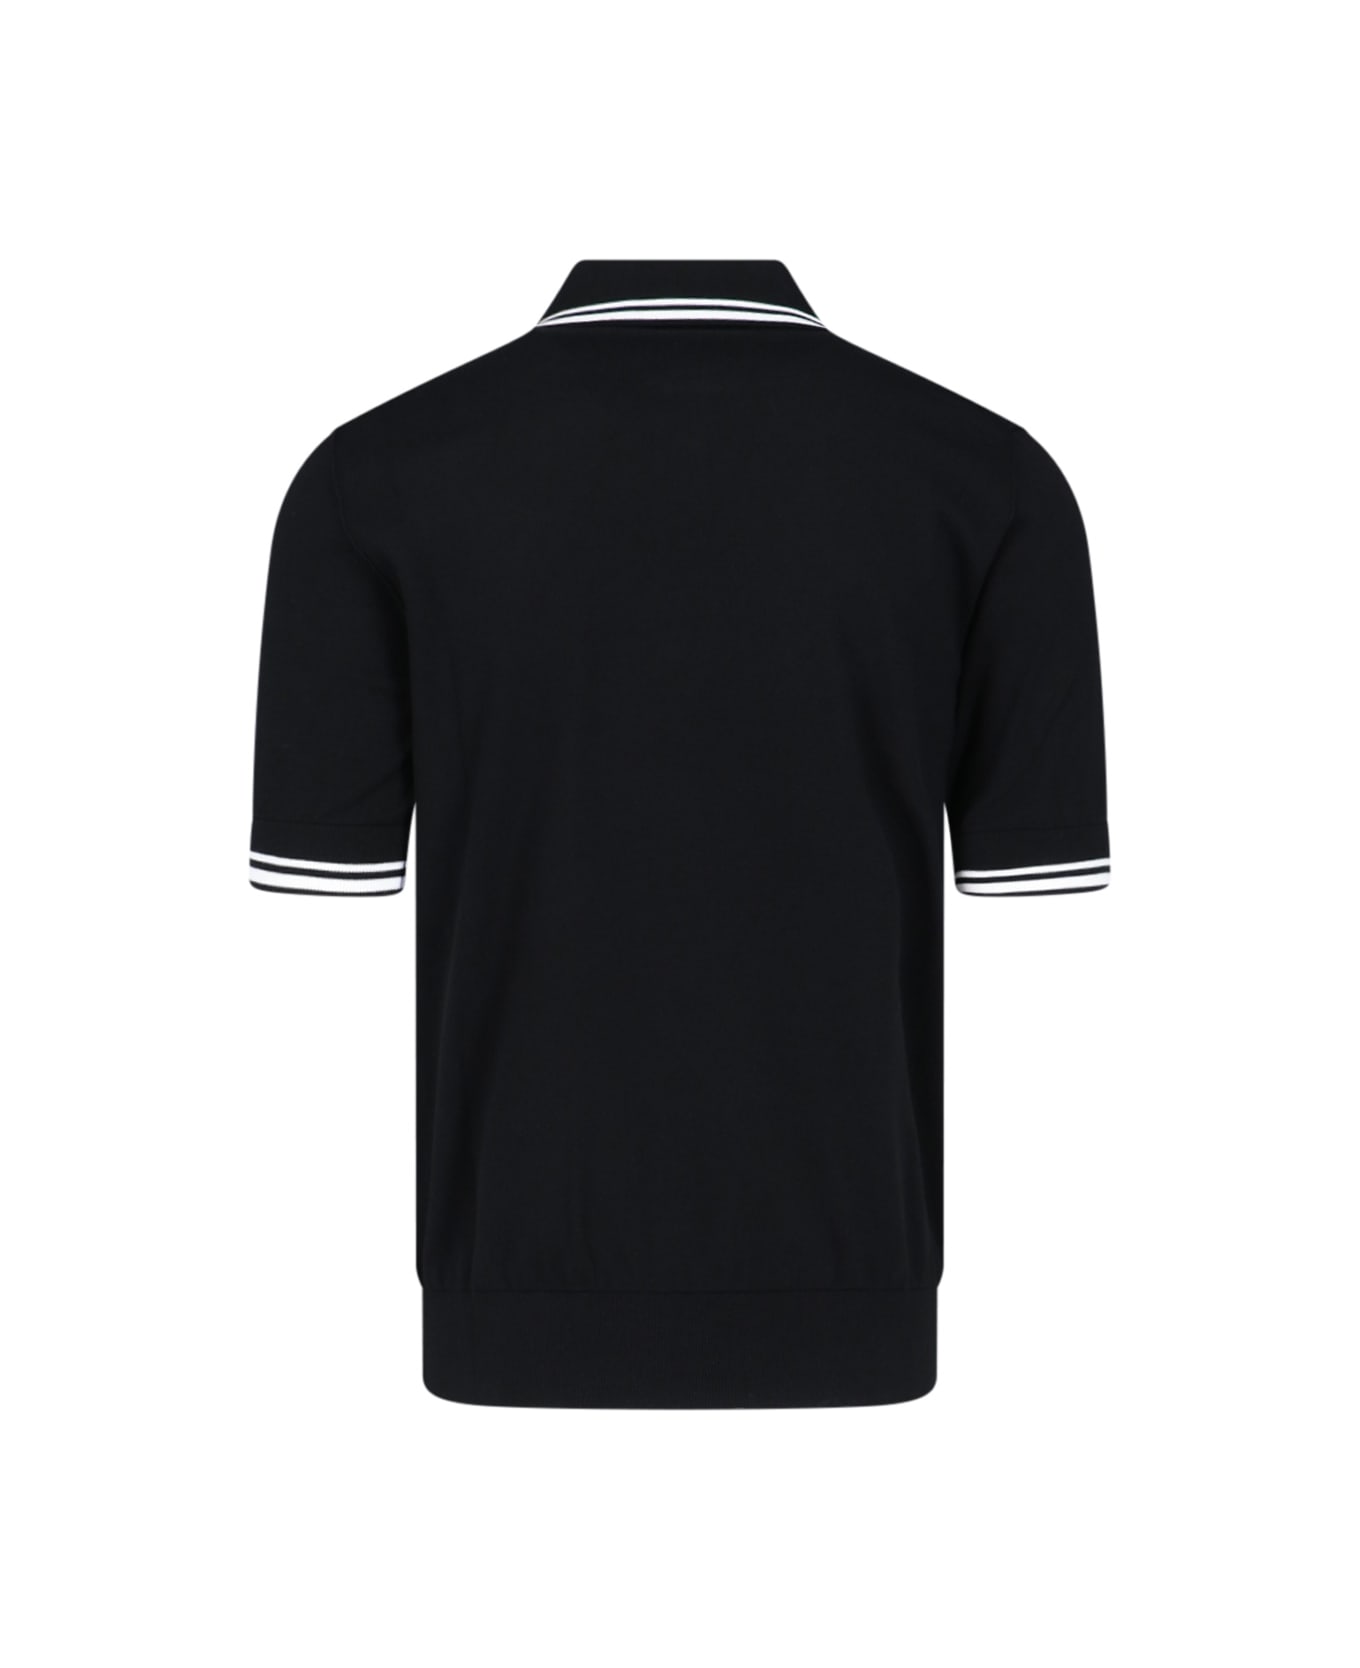 Dolce & Gabbana Logo Polo Shirt - Black  